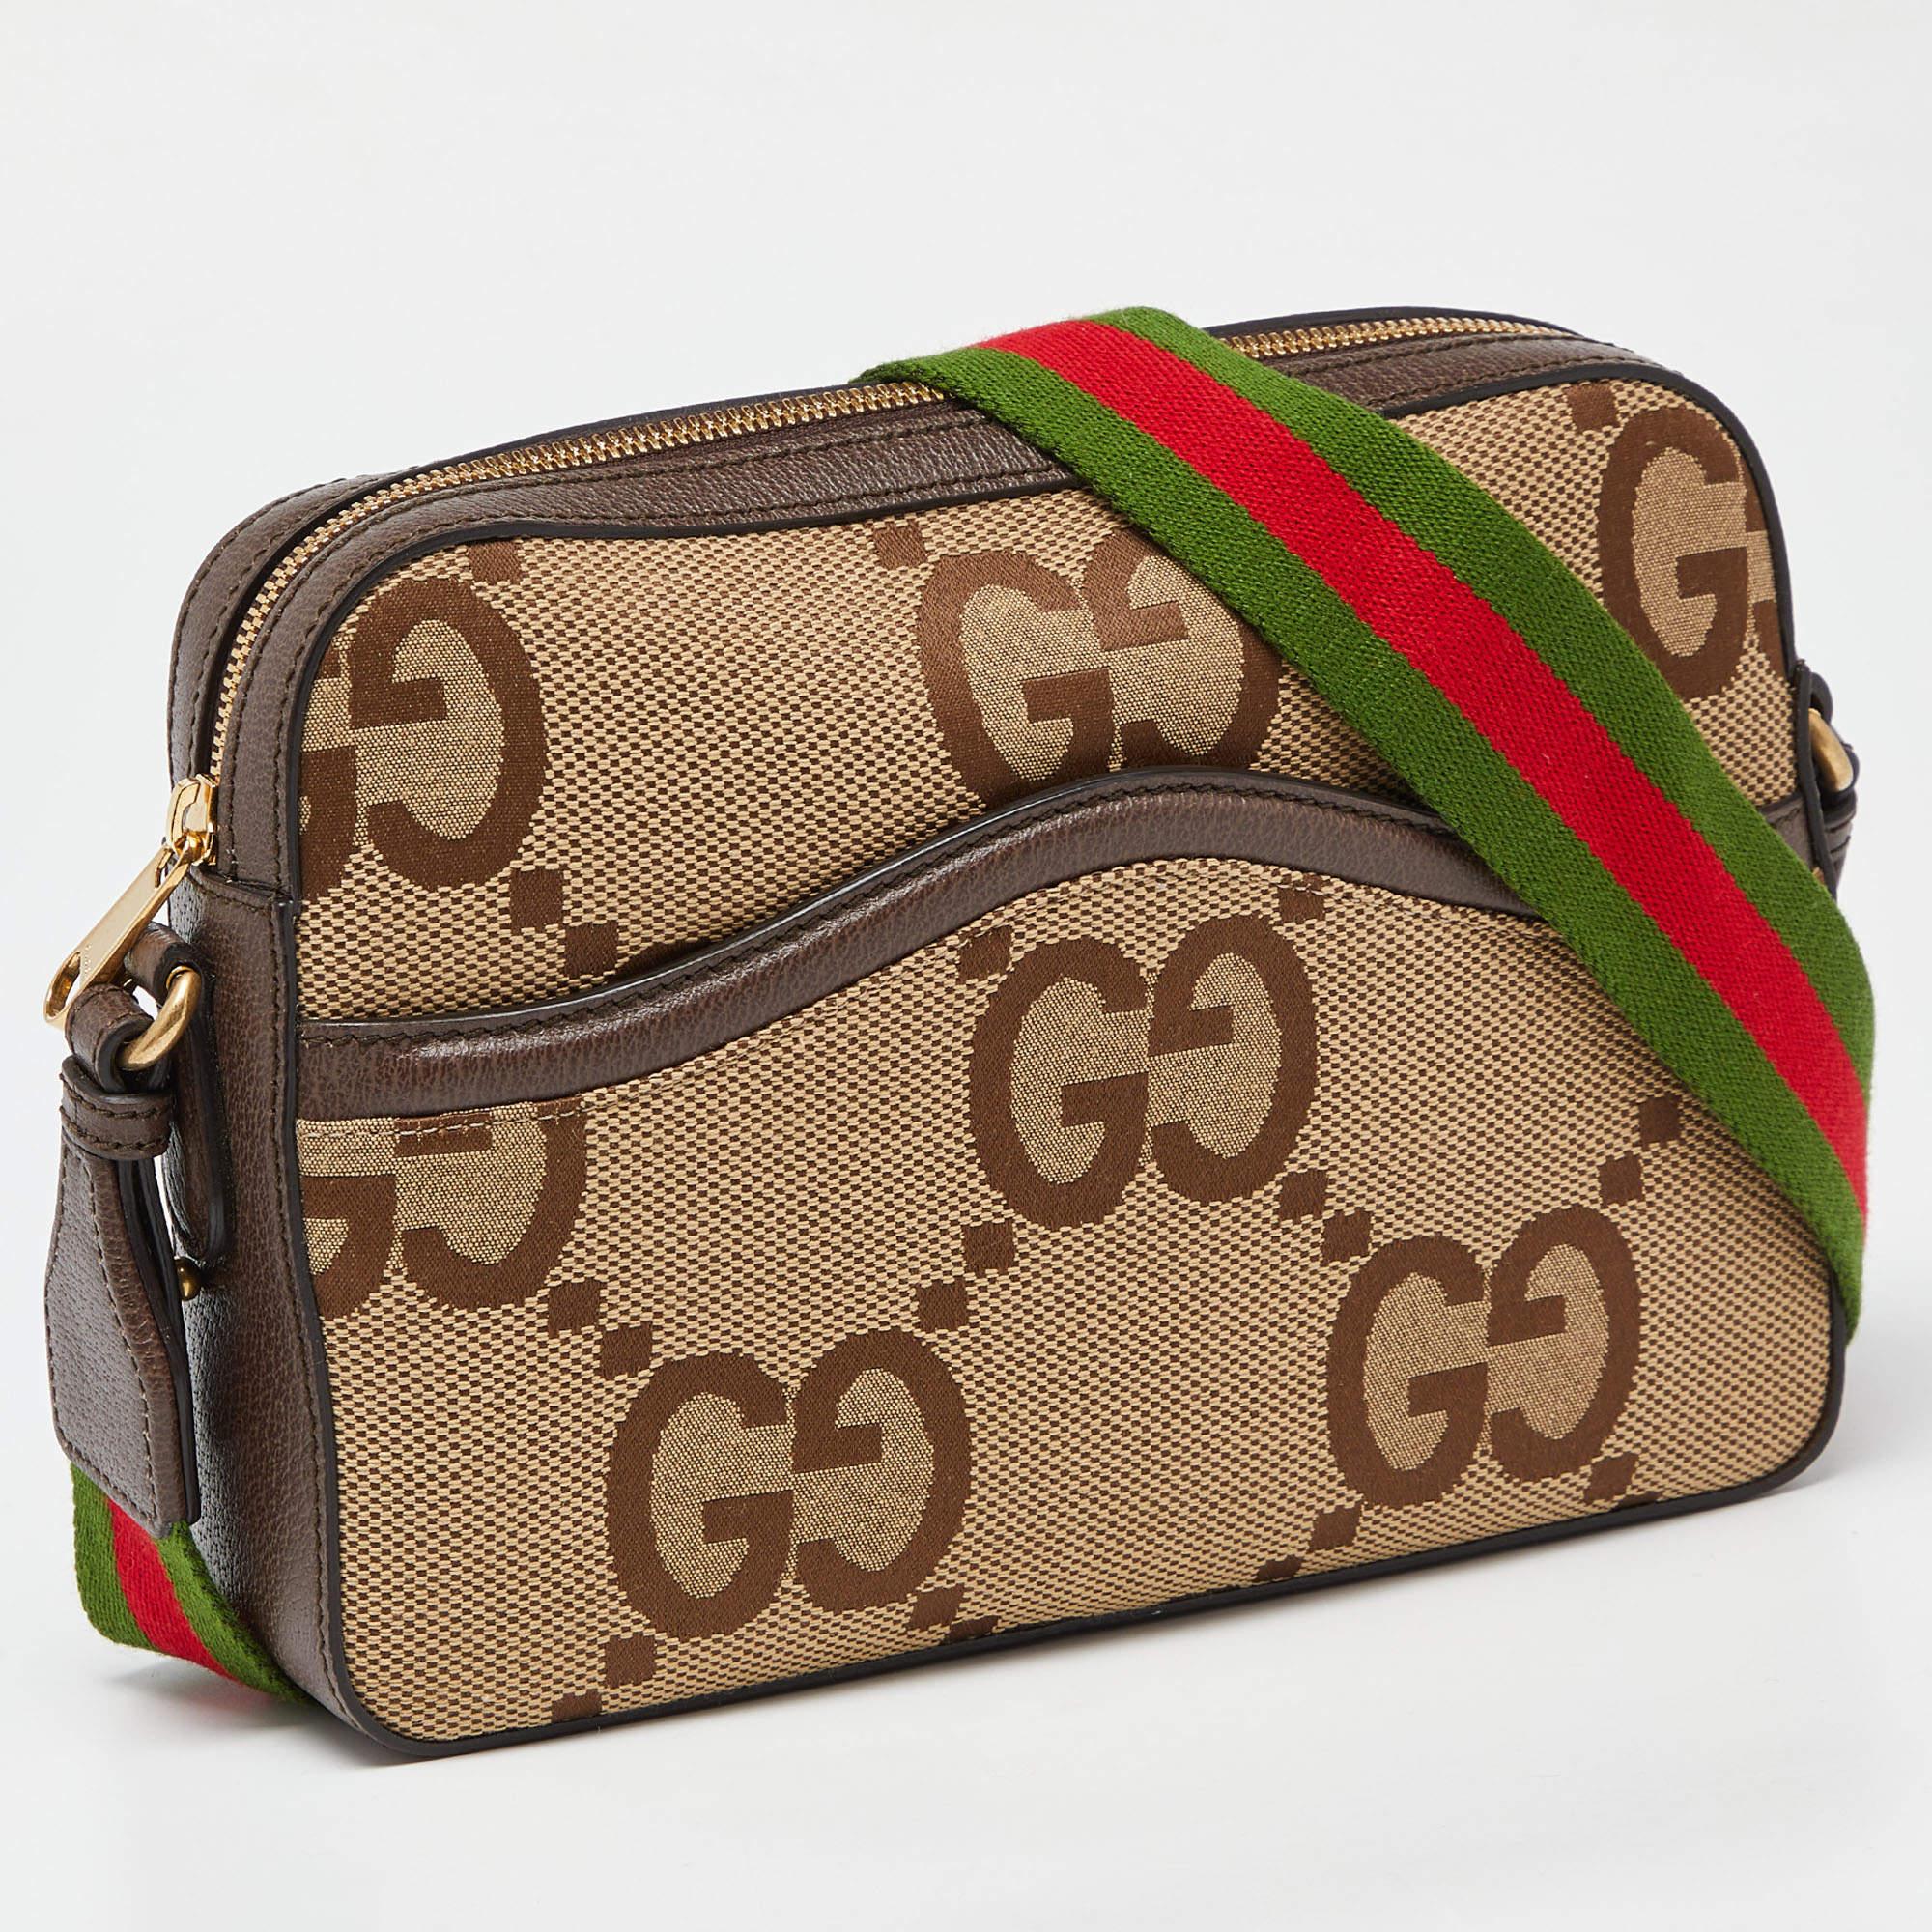 Offrez-vous un luxe intemporel avec ce sac Gucci pour homme. Méticuleusement fabriqué, cet accessoire exquis incarne l'élégance, la fonctionnalité et le style, ce qui en fait le compagnon ultime de toute personne sophistiquée.

